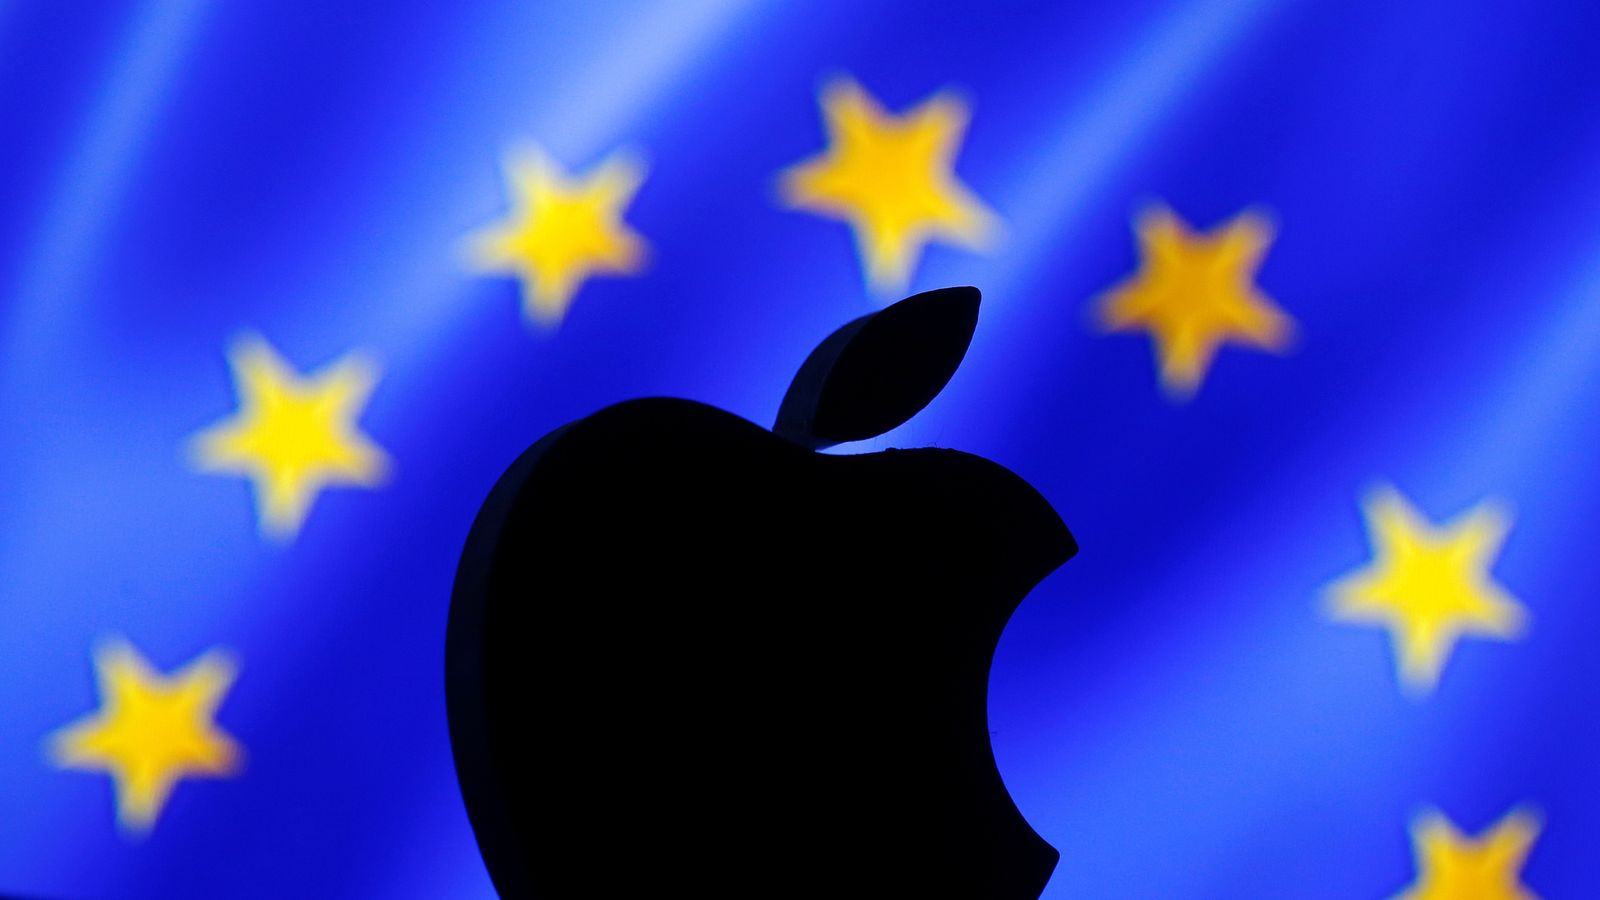 Apple : la justice européenne donne raison à la firme et à l'Irlande, l'amende de 13 milliards annulée